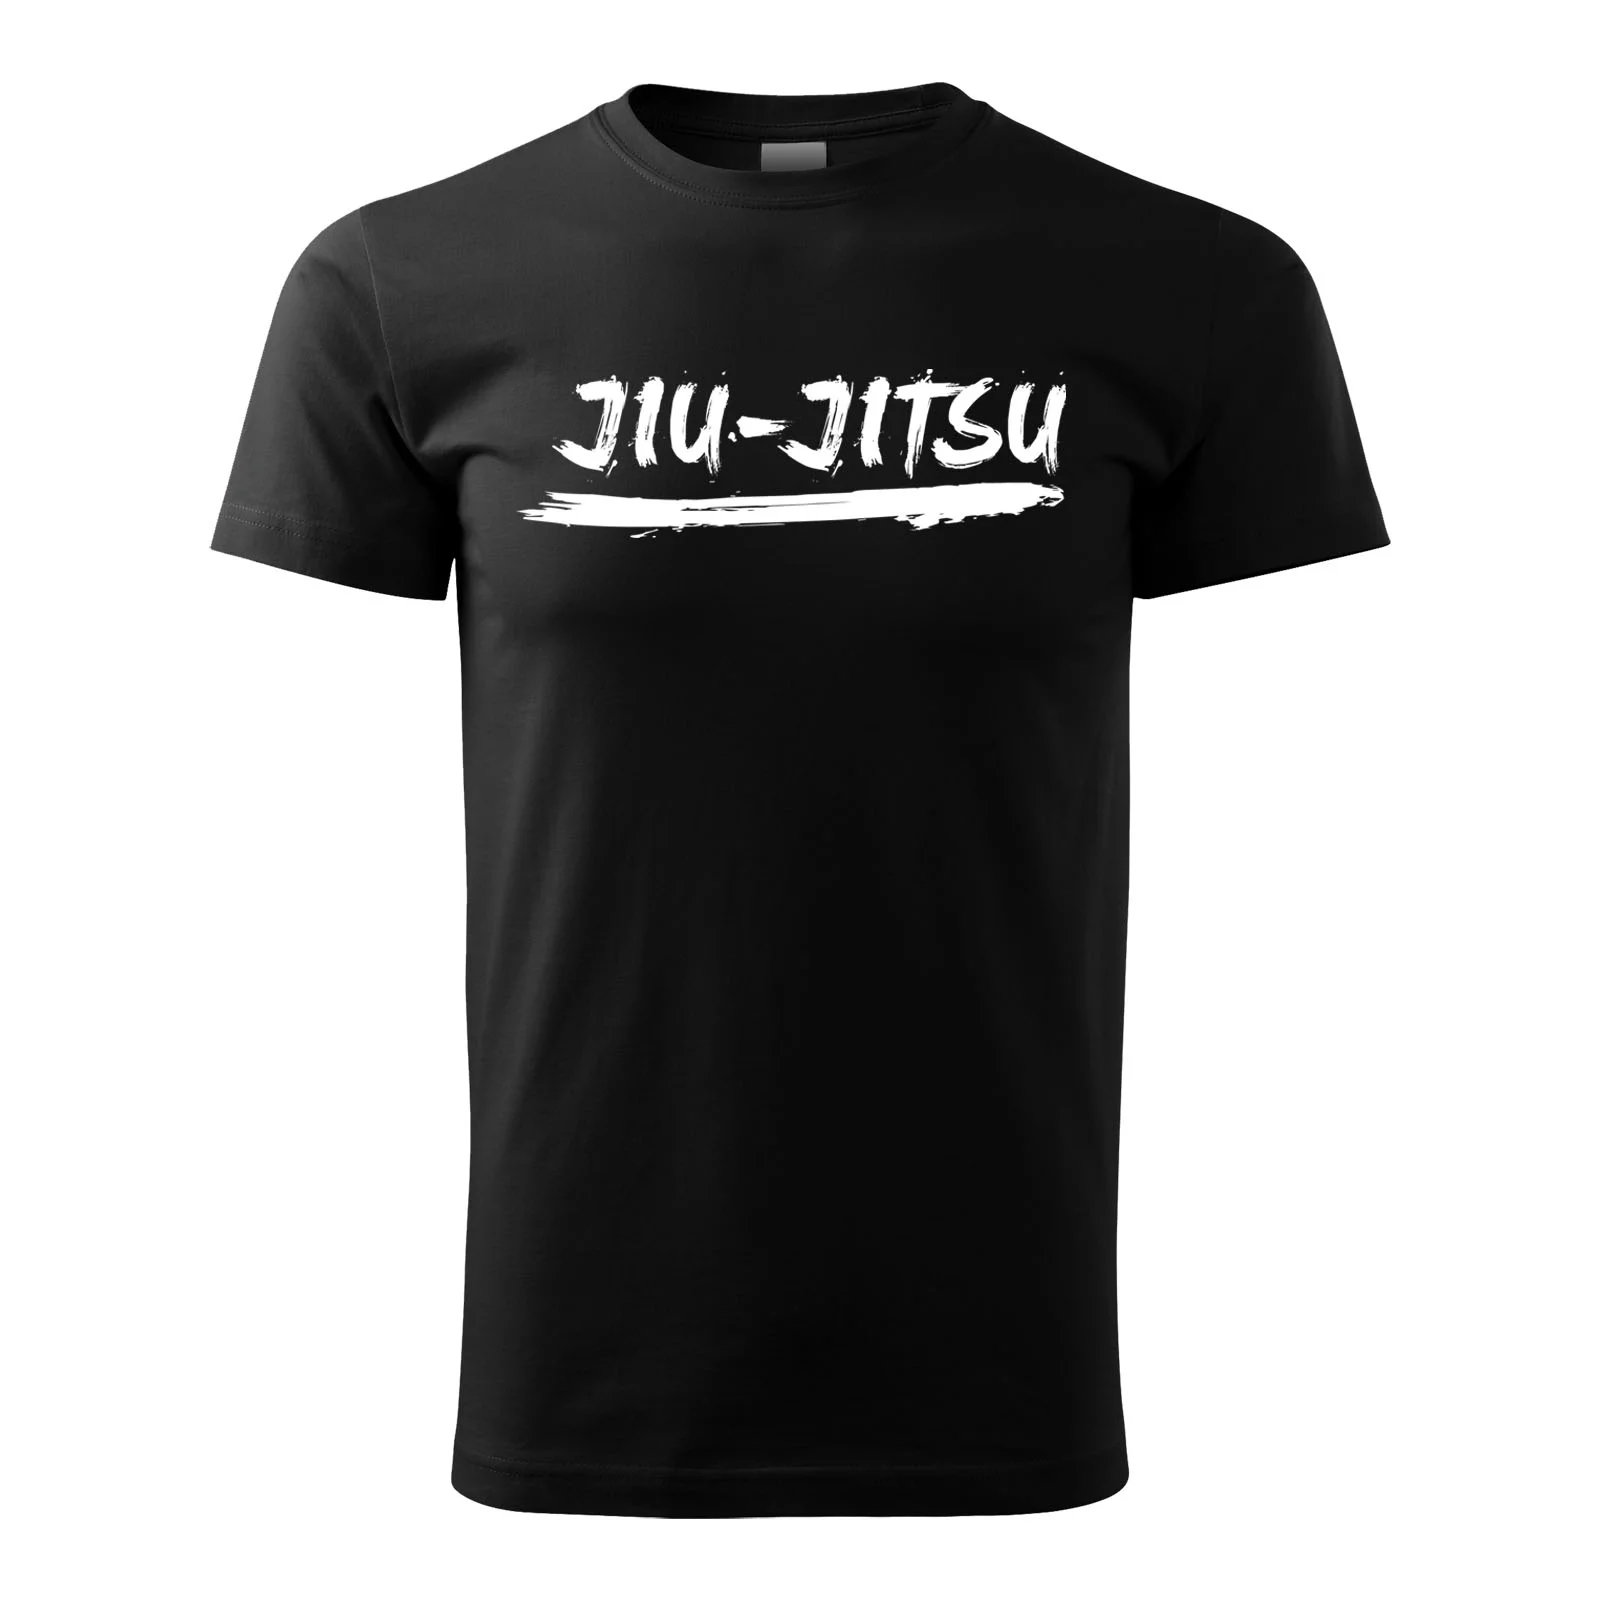 Pánske tričko Jiu Jitsu čierne veľkosť L